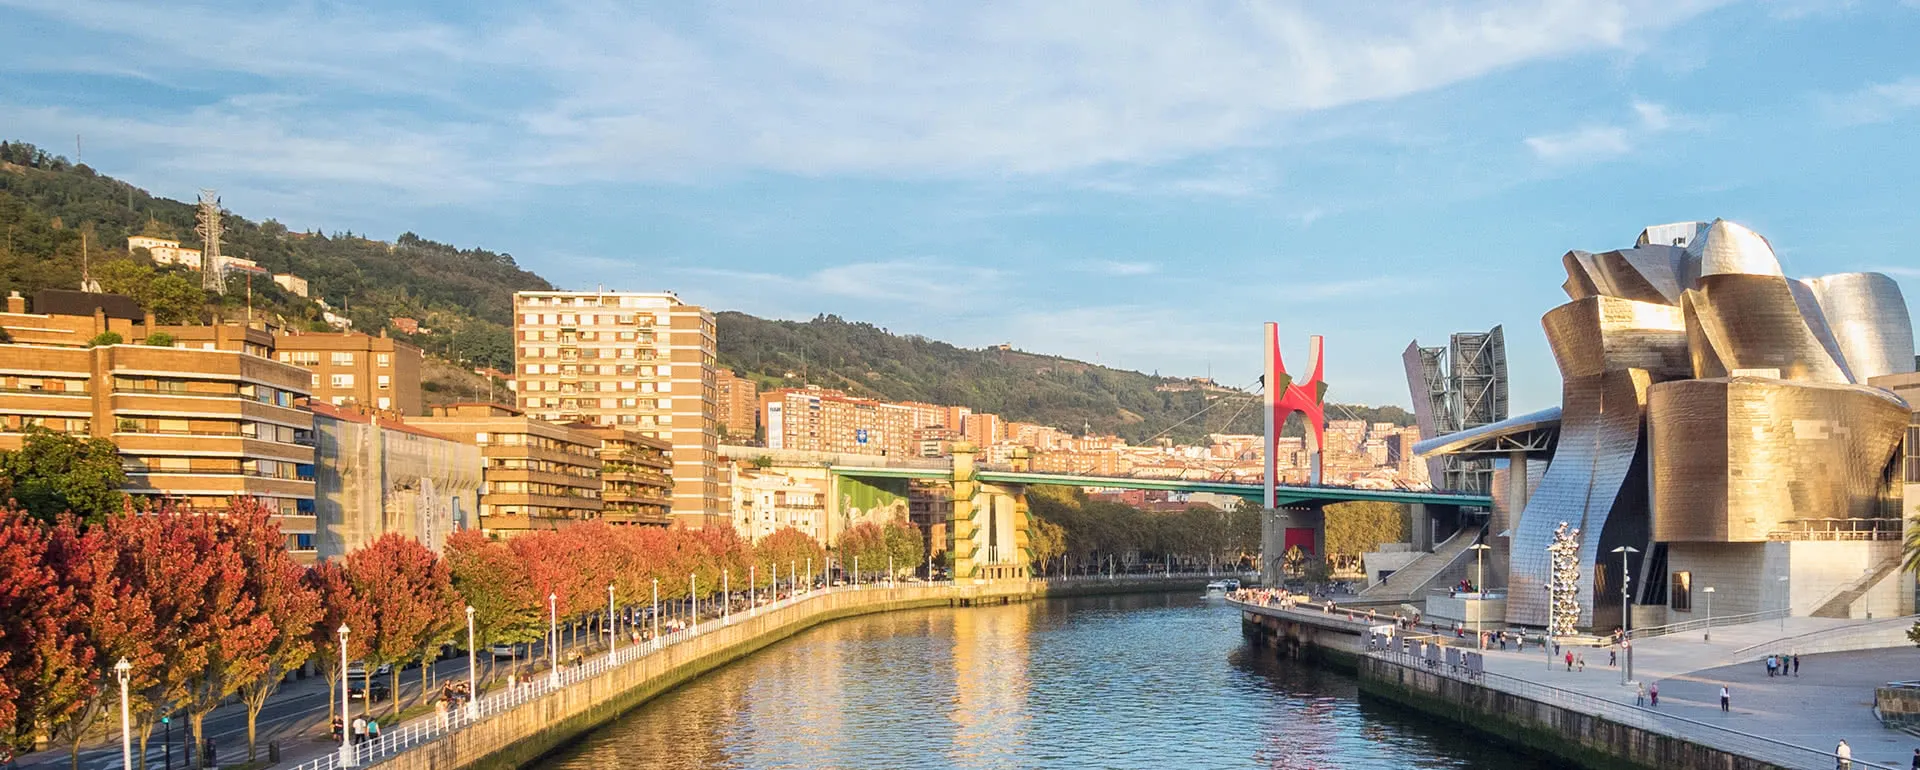 Meeting und Tagungsort Bilbao